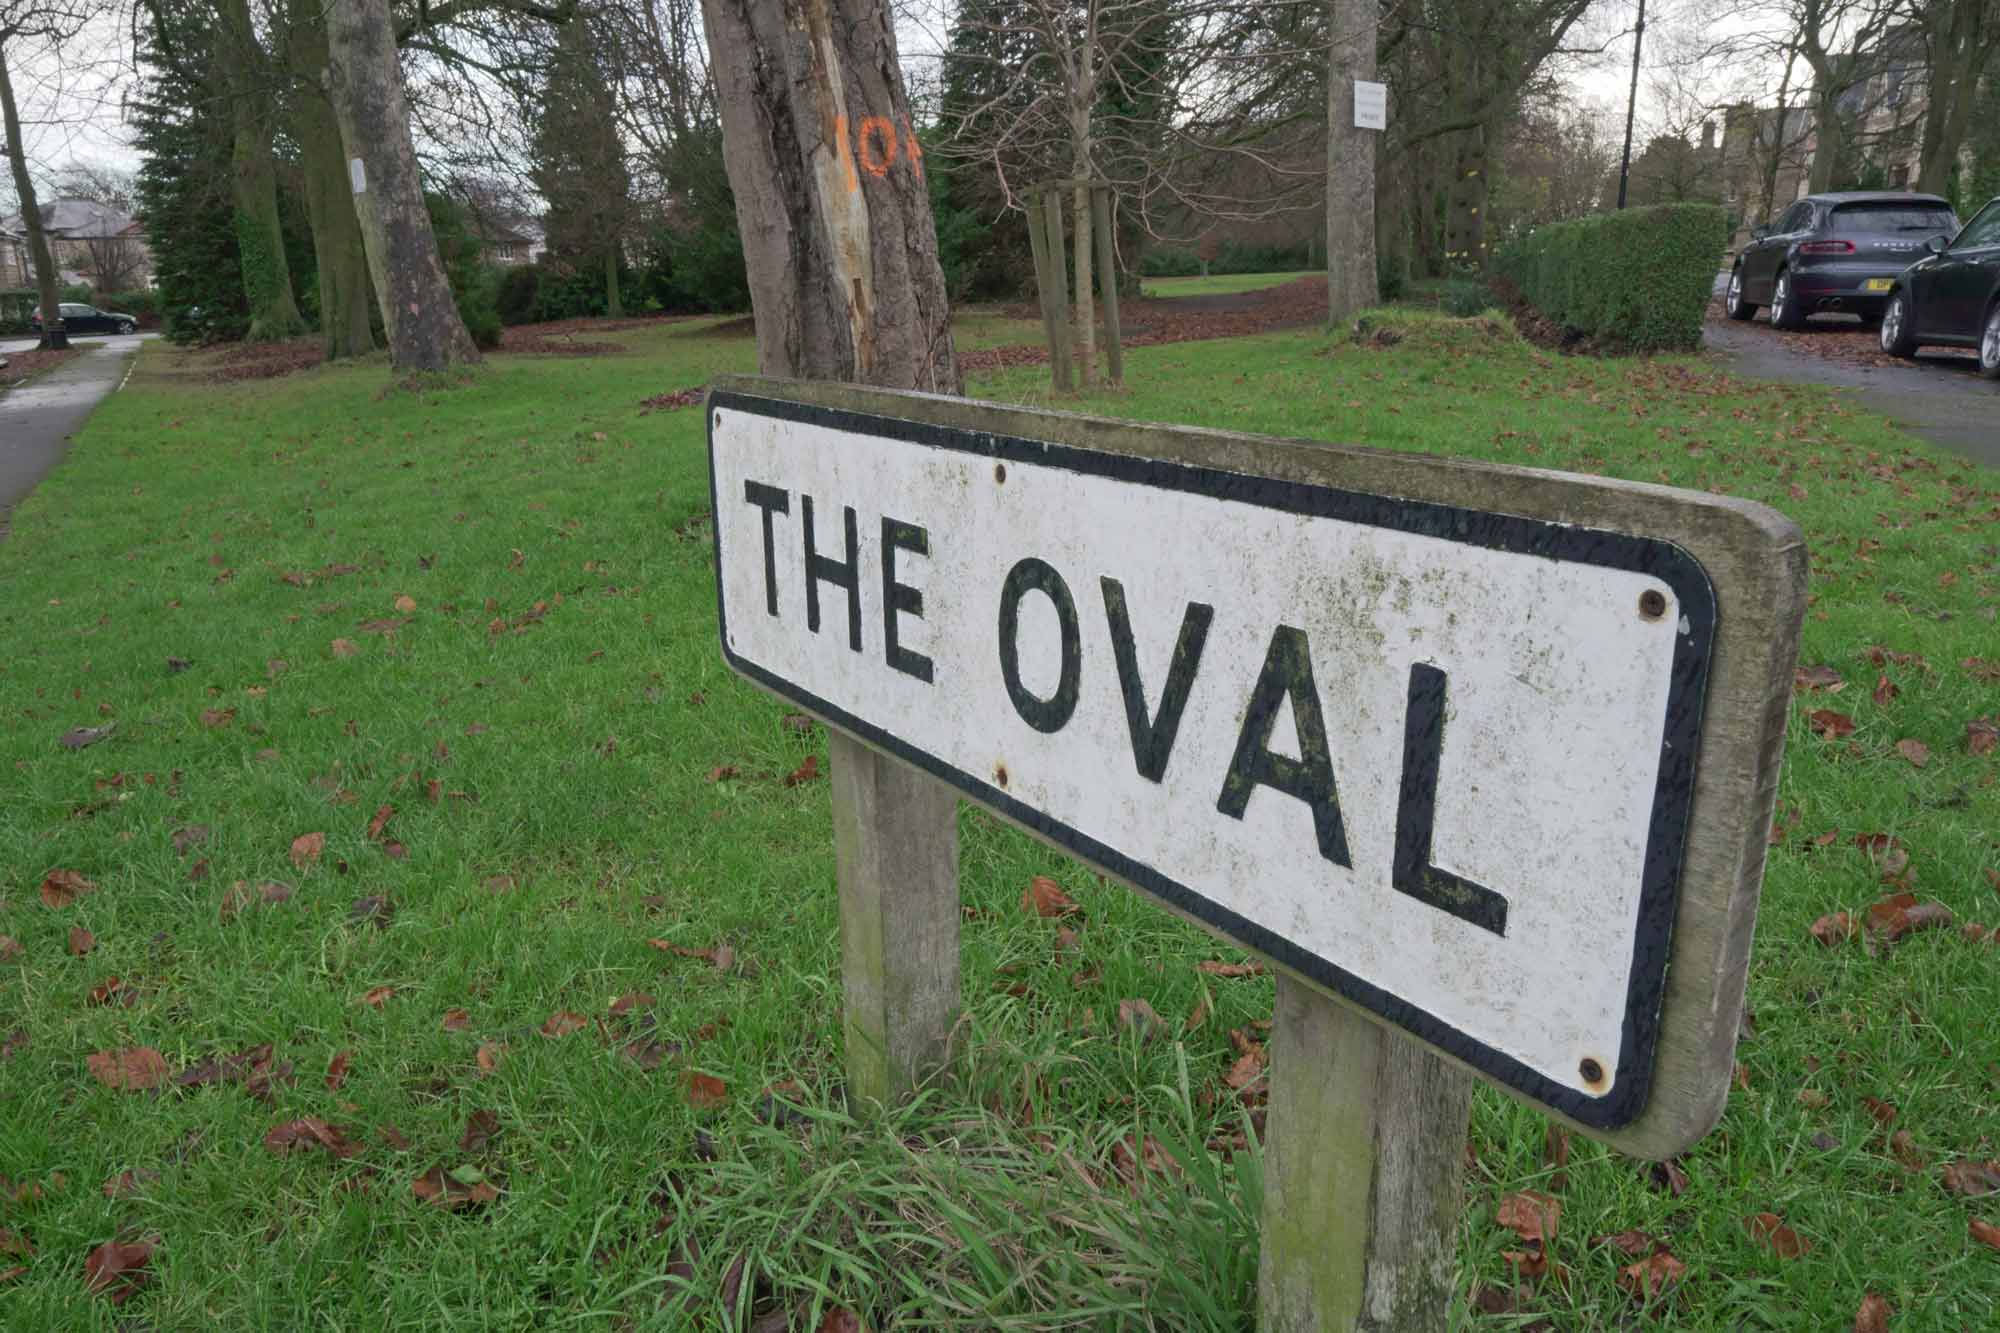 The Oval in Harrogate